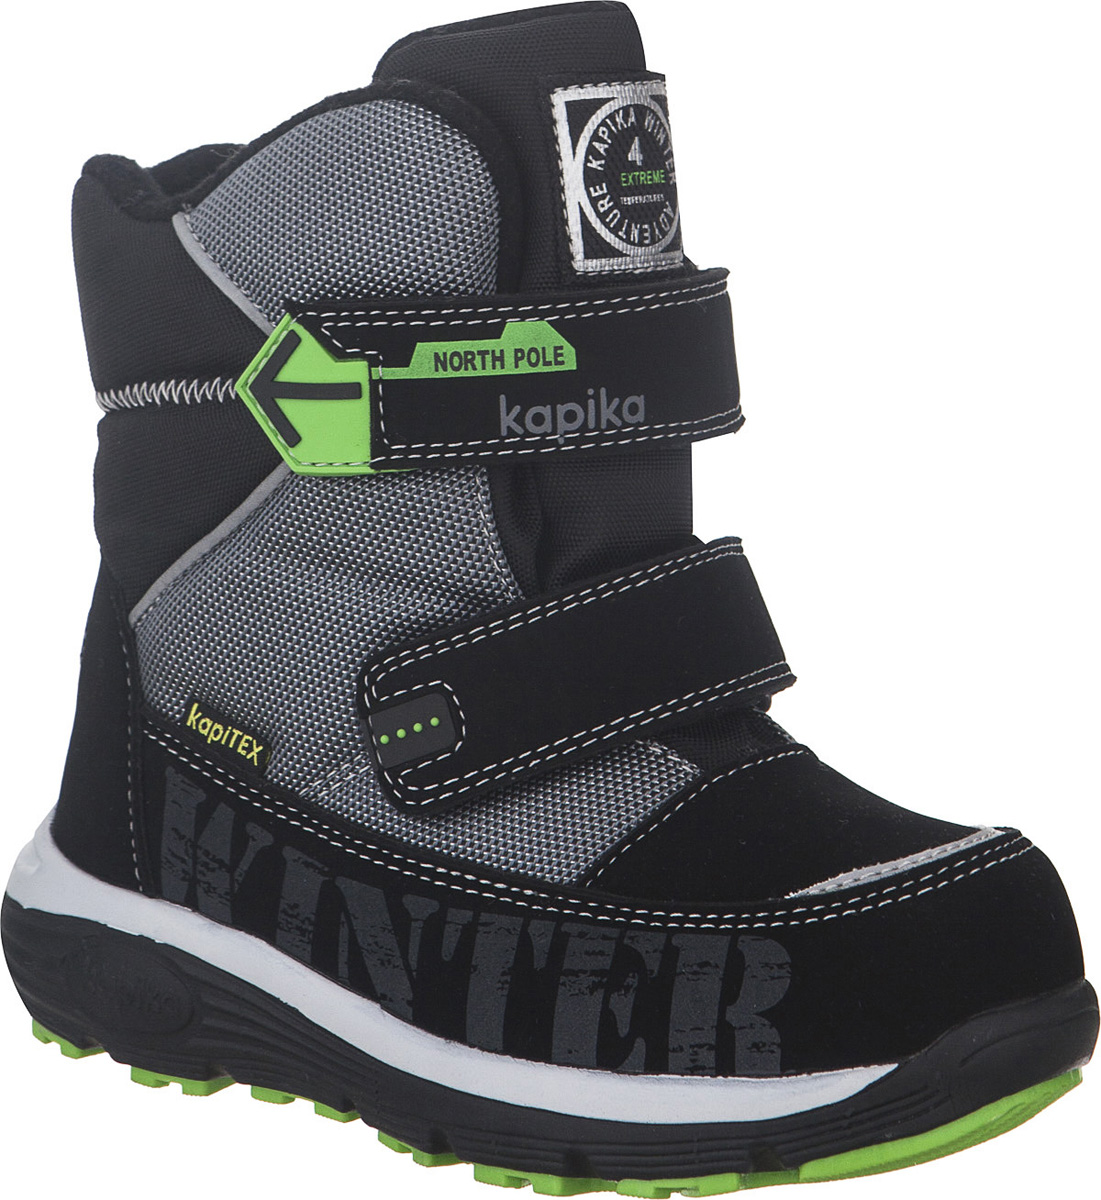 Ботинки для мальчика Kapika KapiTEX, цвет: черный, серый. 42247-2. Размер 30